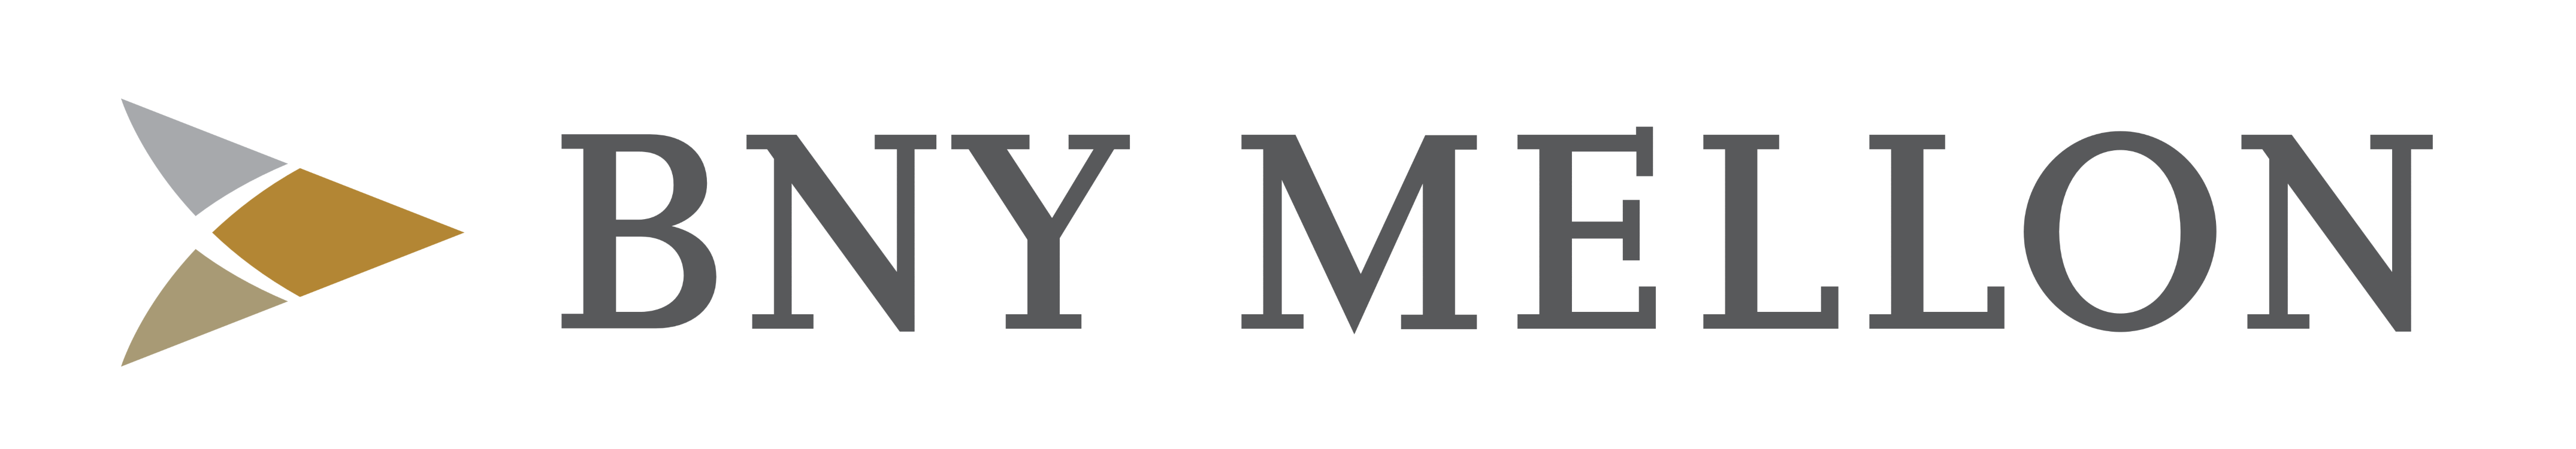 BNY Mellon – Logos Download